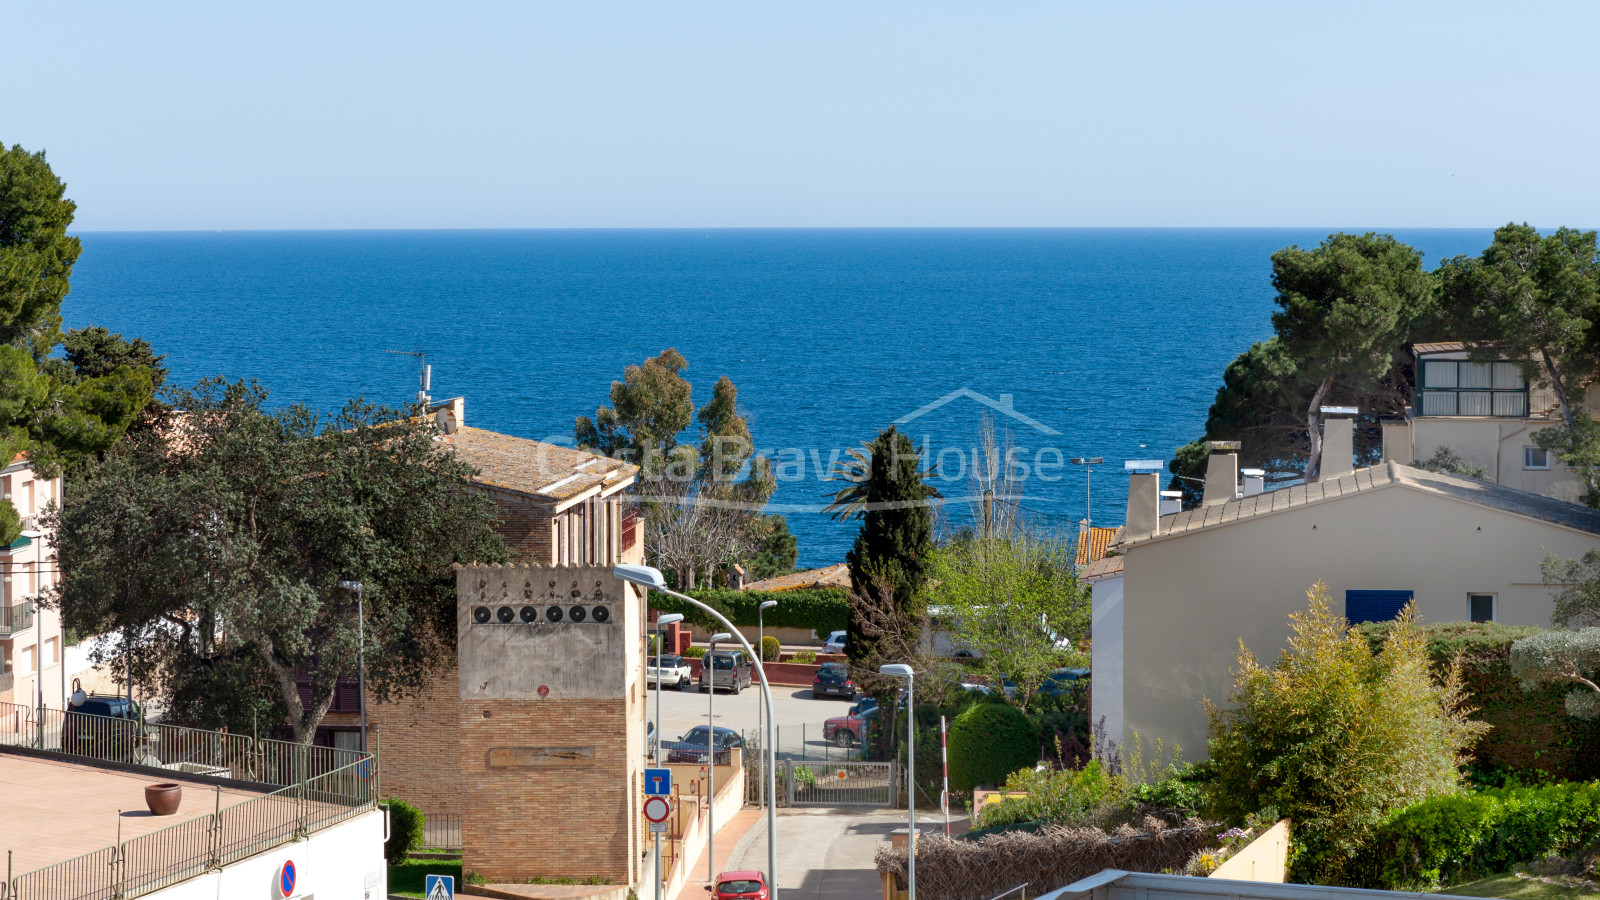 Apartament amb vista mar en venda a Calella Palafrugell, a 250 m de la platja del Port Pelegrí